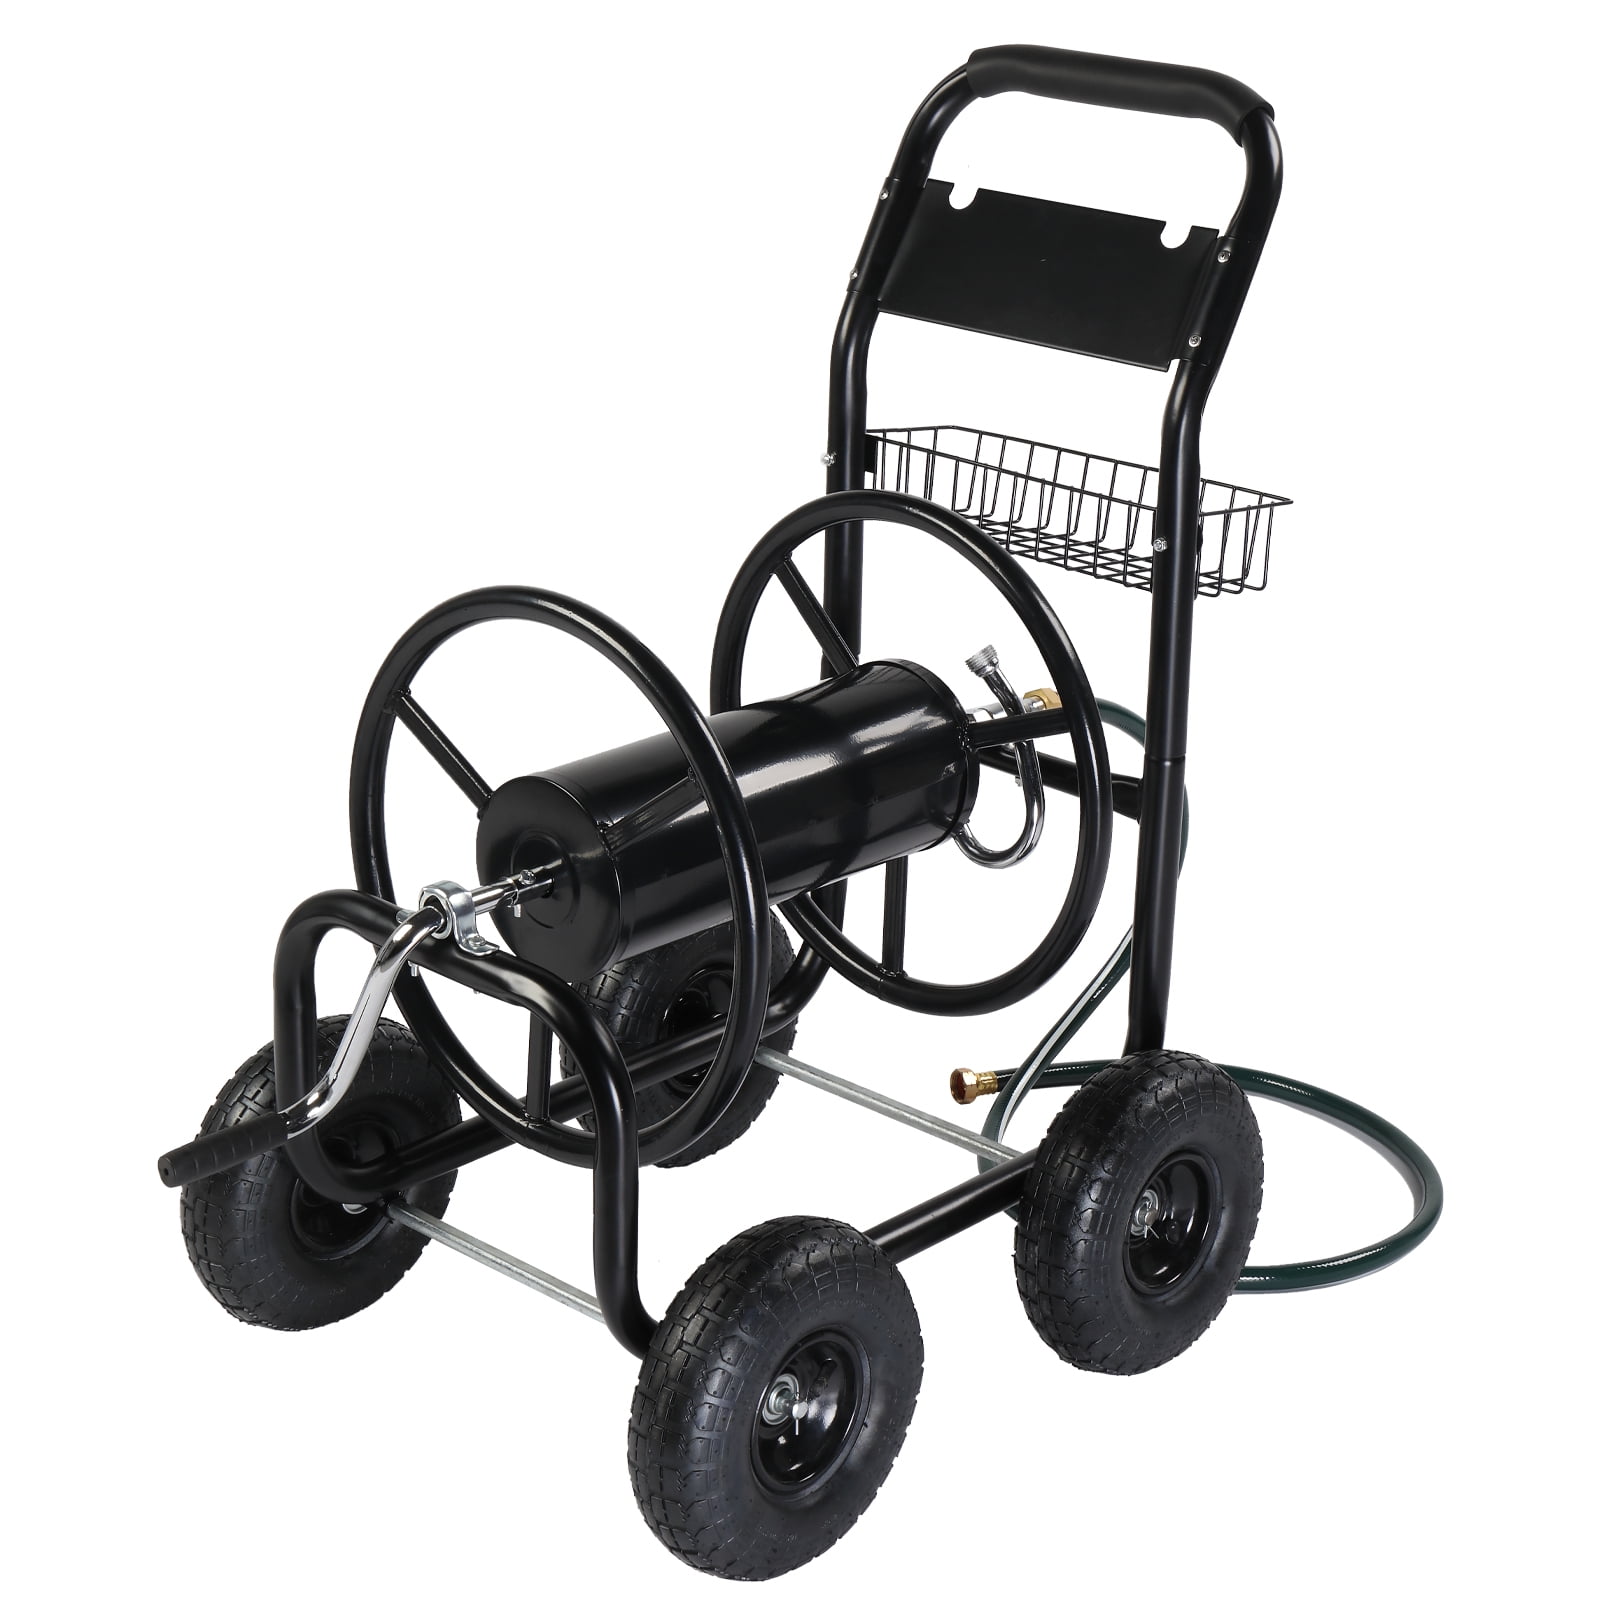 Ktaxon Garden hose cart Iron Four-Wheel Pipe Truck Dark Black 